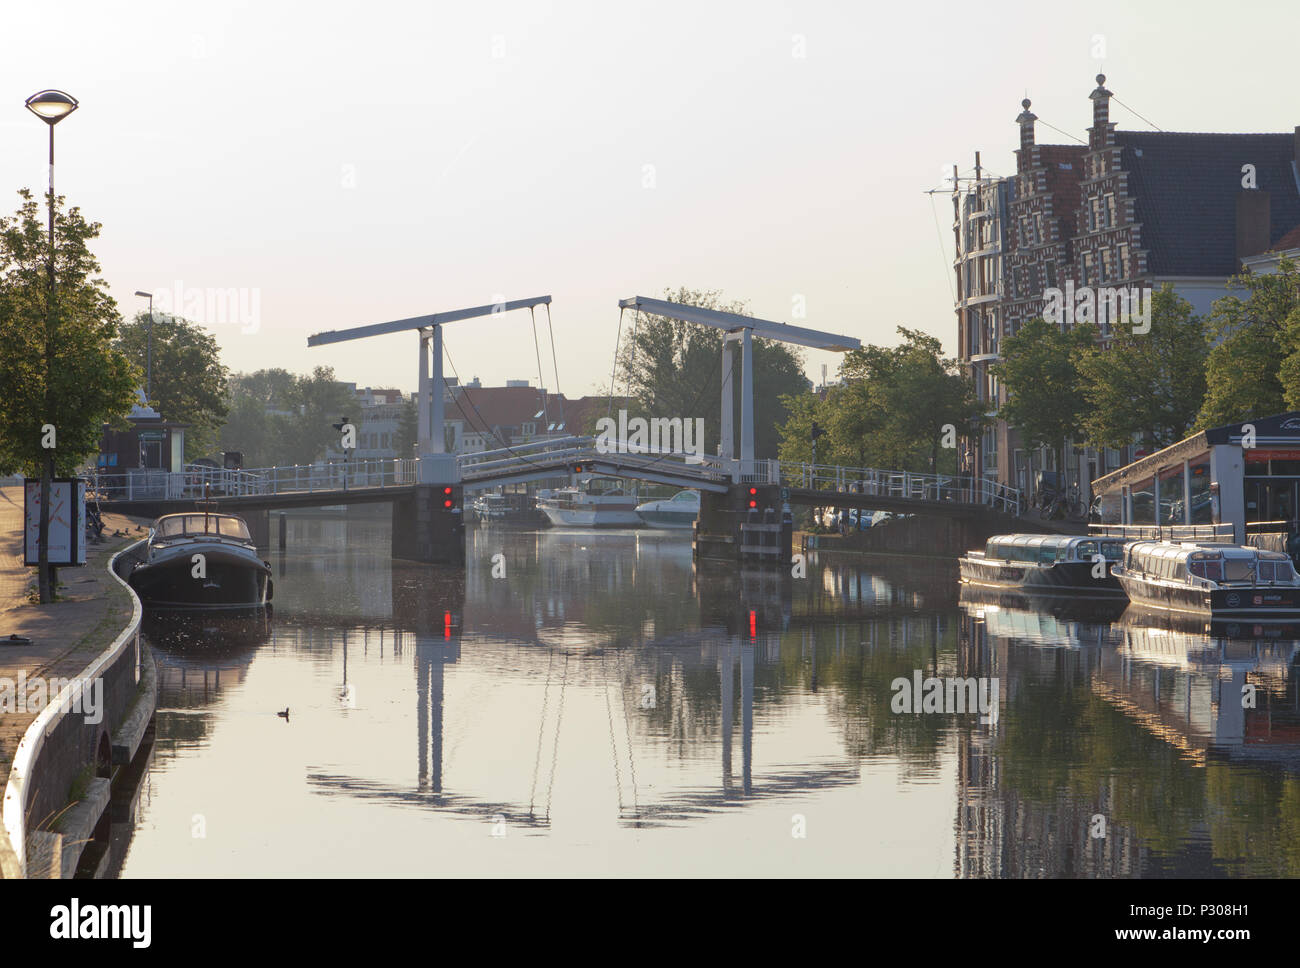 The Gravestenen bridge (Gravestenenbrug), Haarlem, Netherlands. Stock Photo